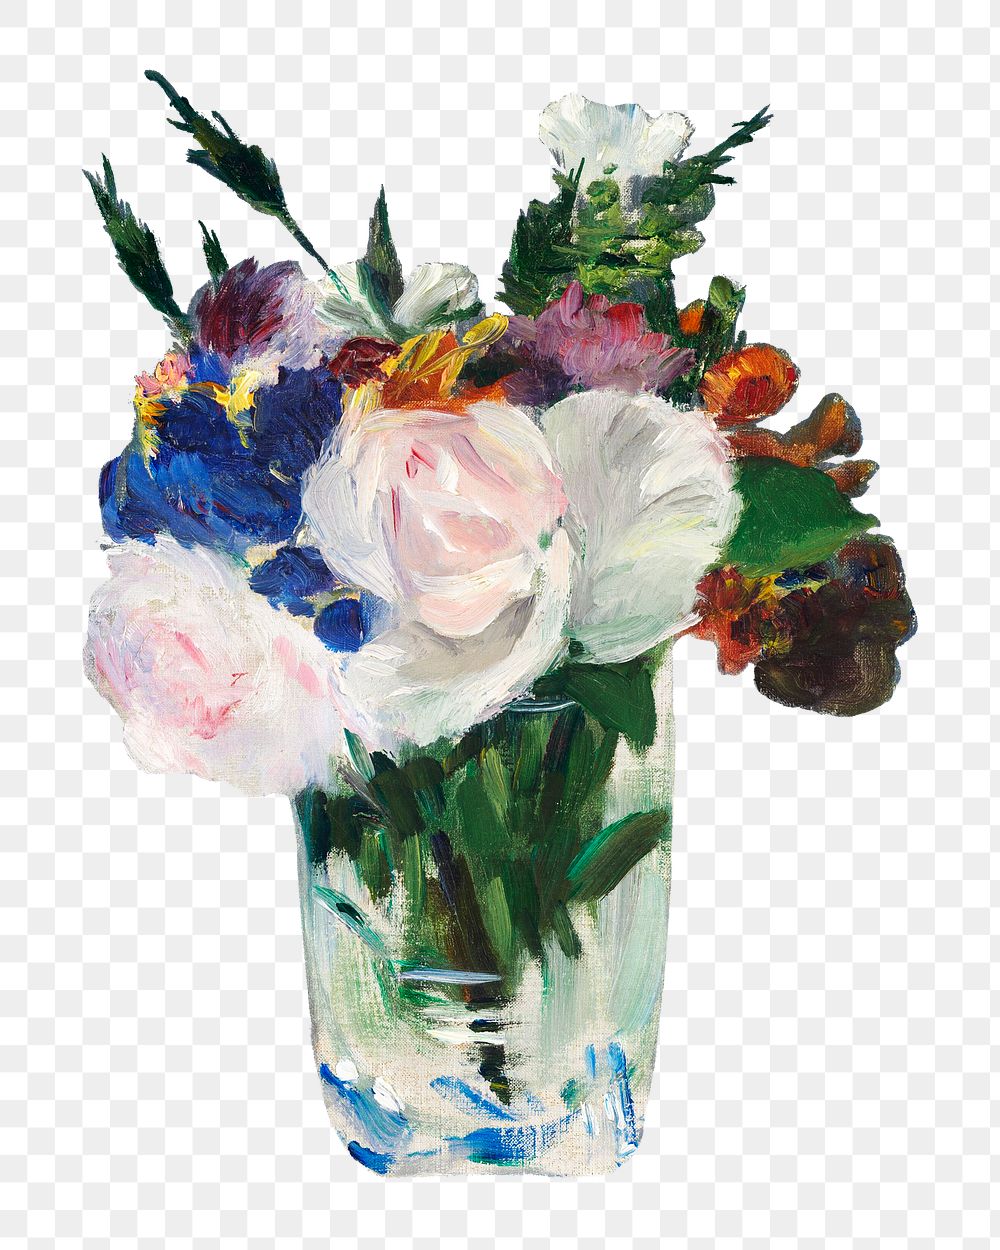 Png Flowers in a Crystal vase sticker, Edouard Manet's vintage illustration, transparent background